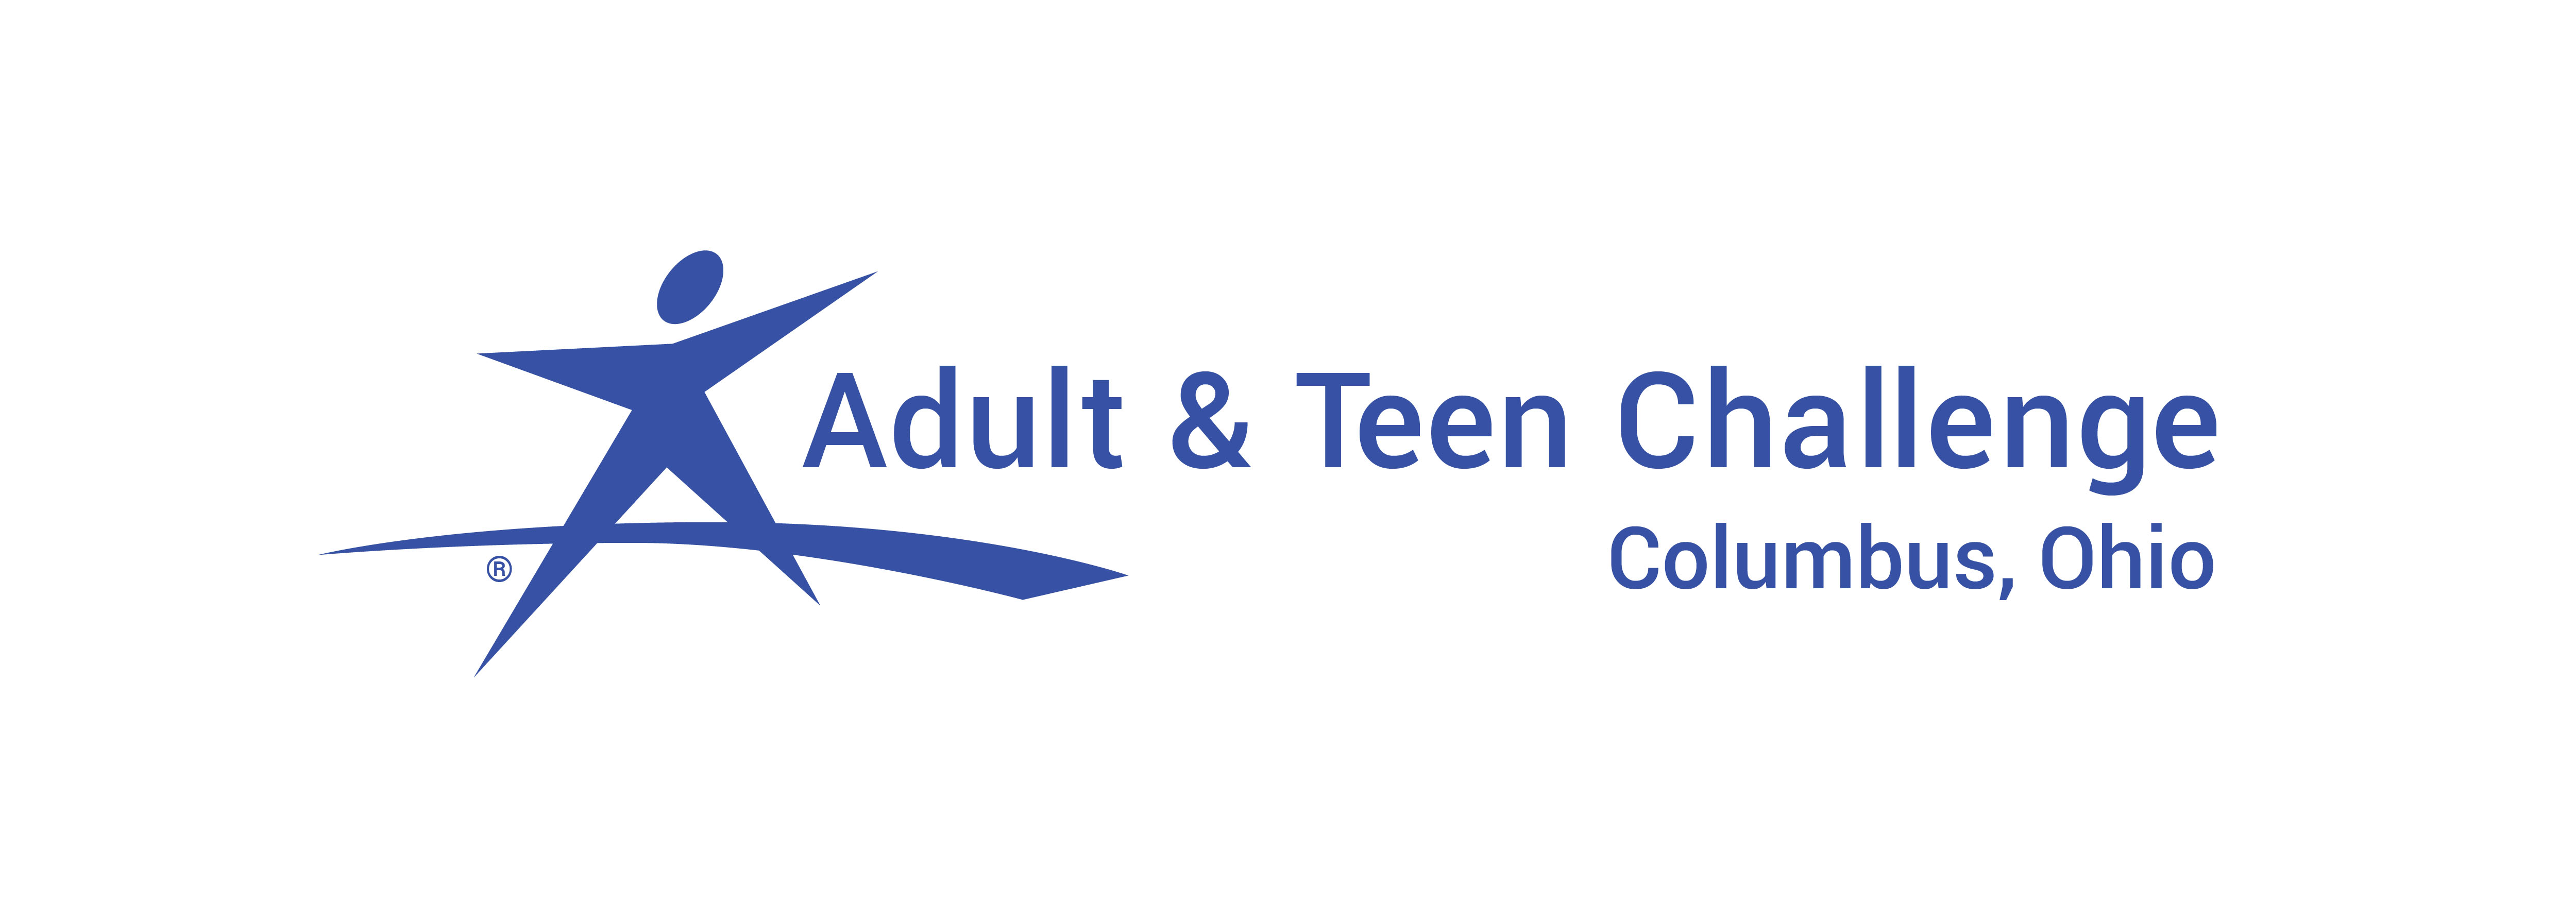 Adult & Teen Challenge Ohio logo